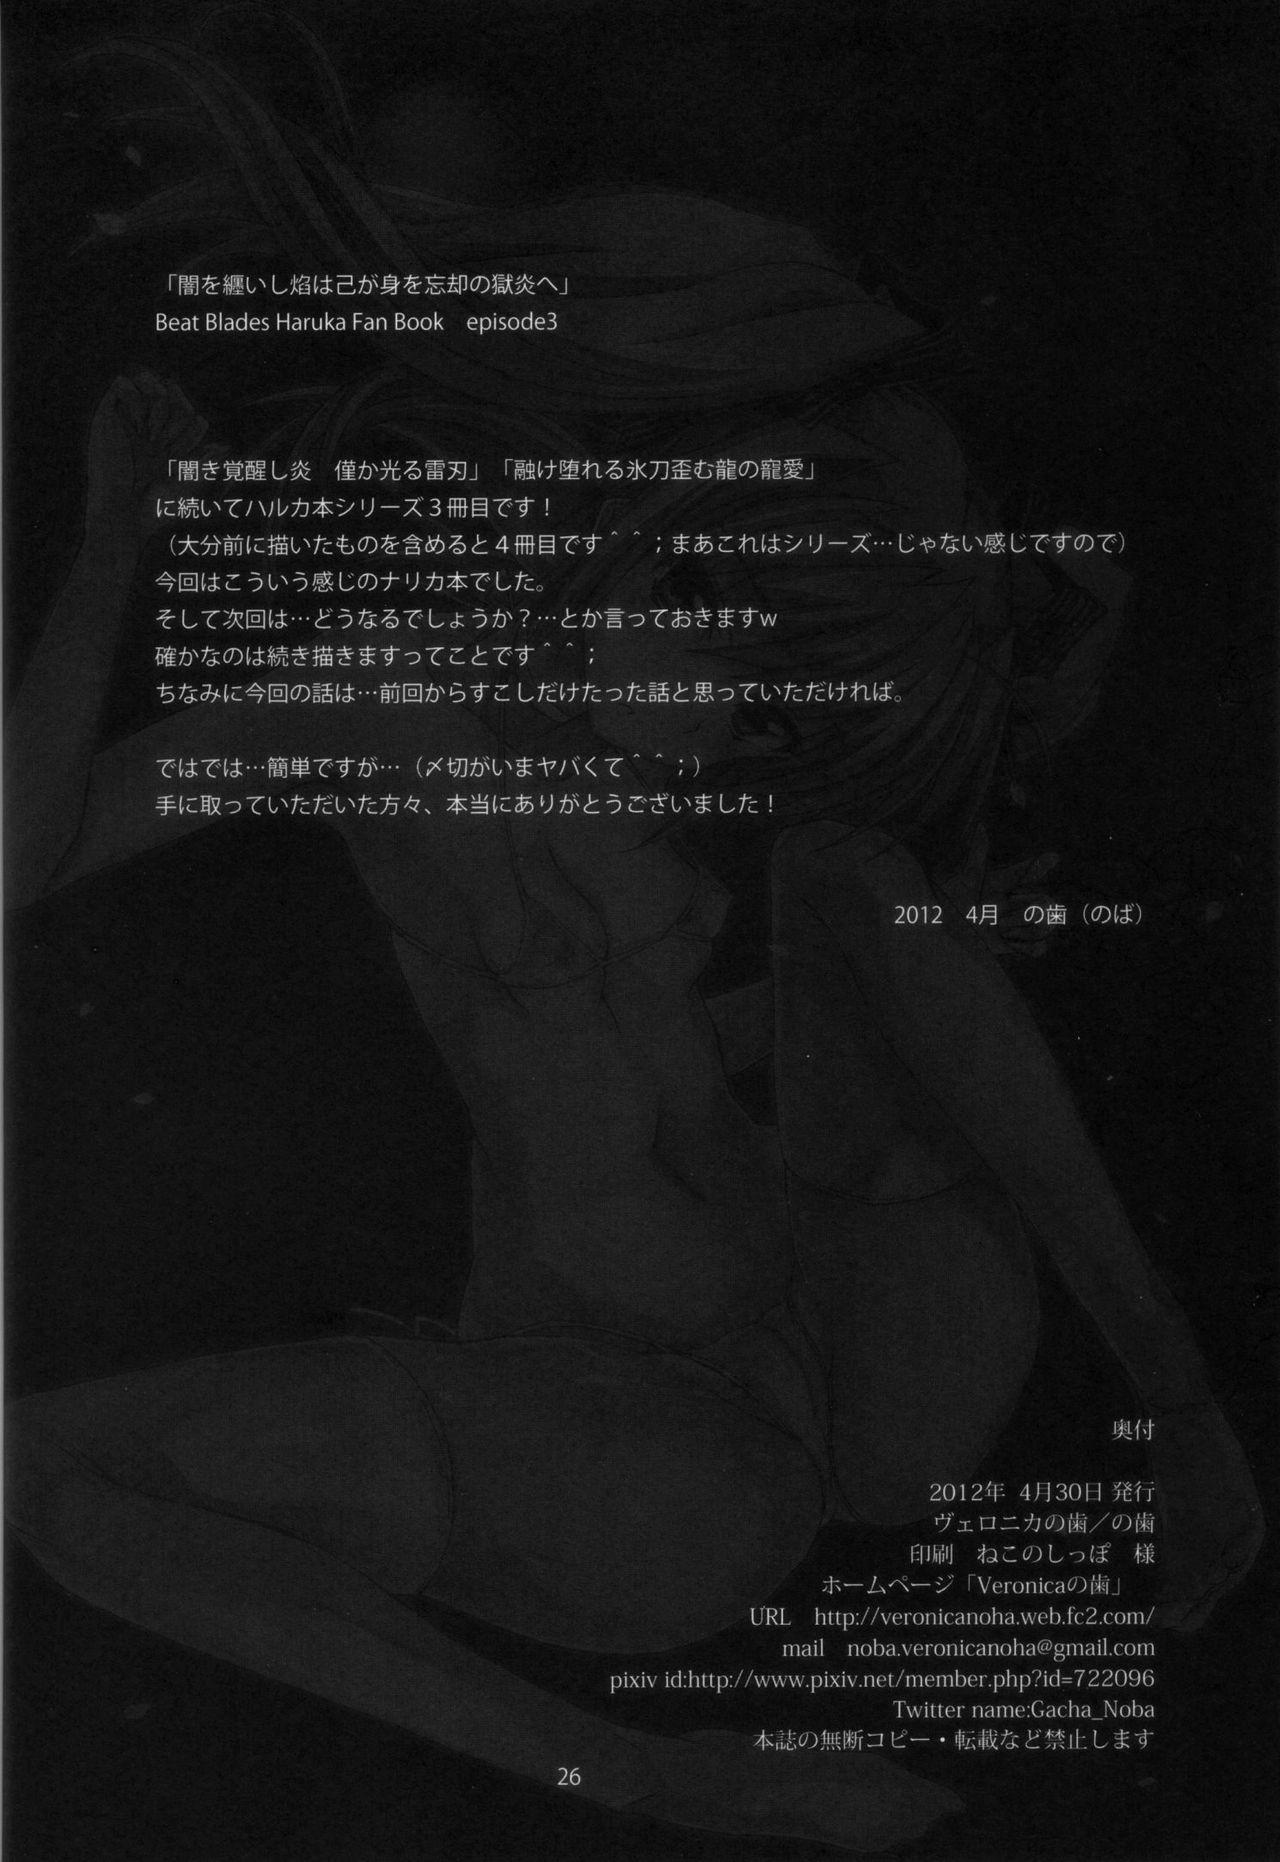 Trans Yami wo Matoishi Homura wa Ono ga Mi wo Boukyaku no Gokuen e - Beat blades haruka Brazzers - Page 25